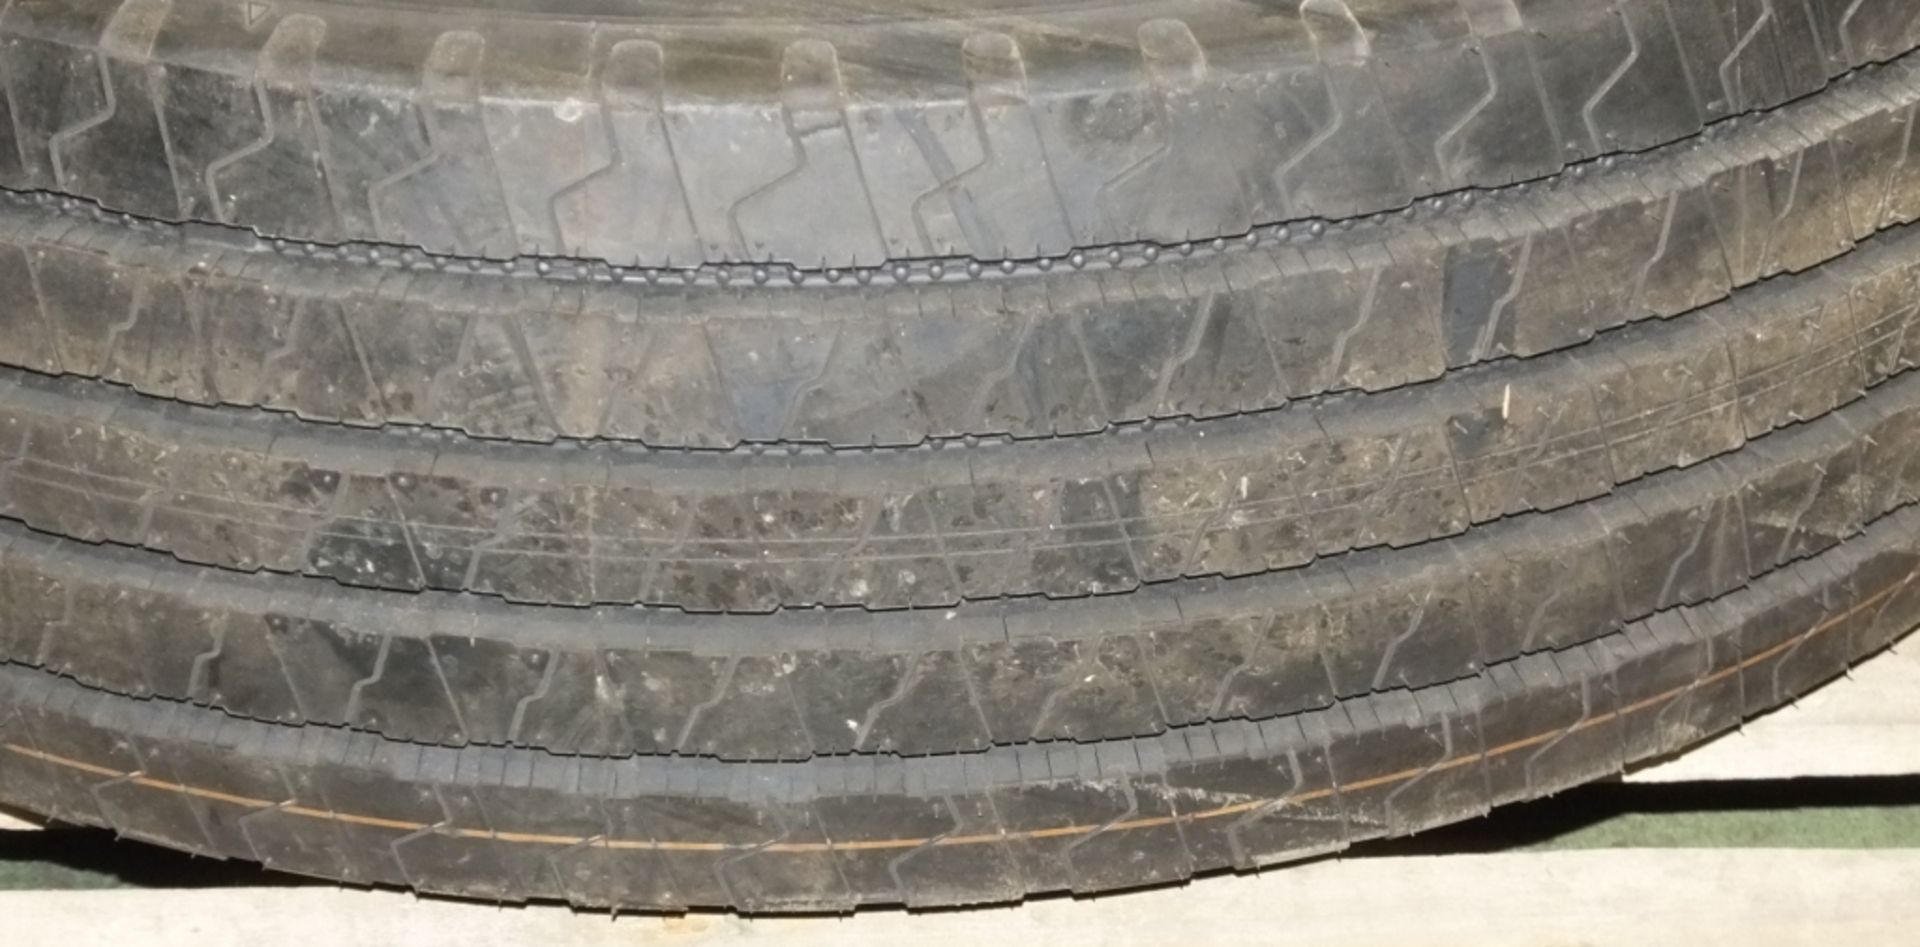 Hankook AH11 305/70R19.5 tyre (new & unused) - Image 6 of 7